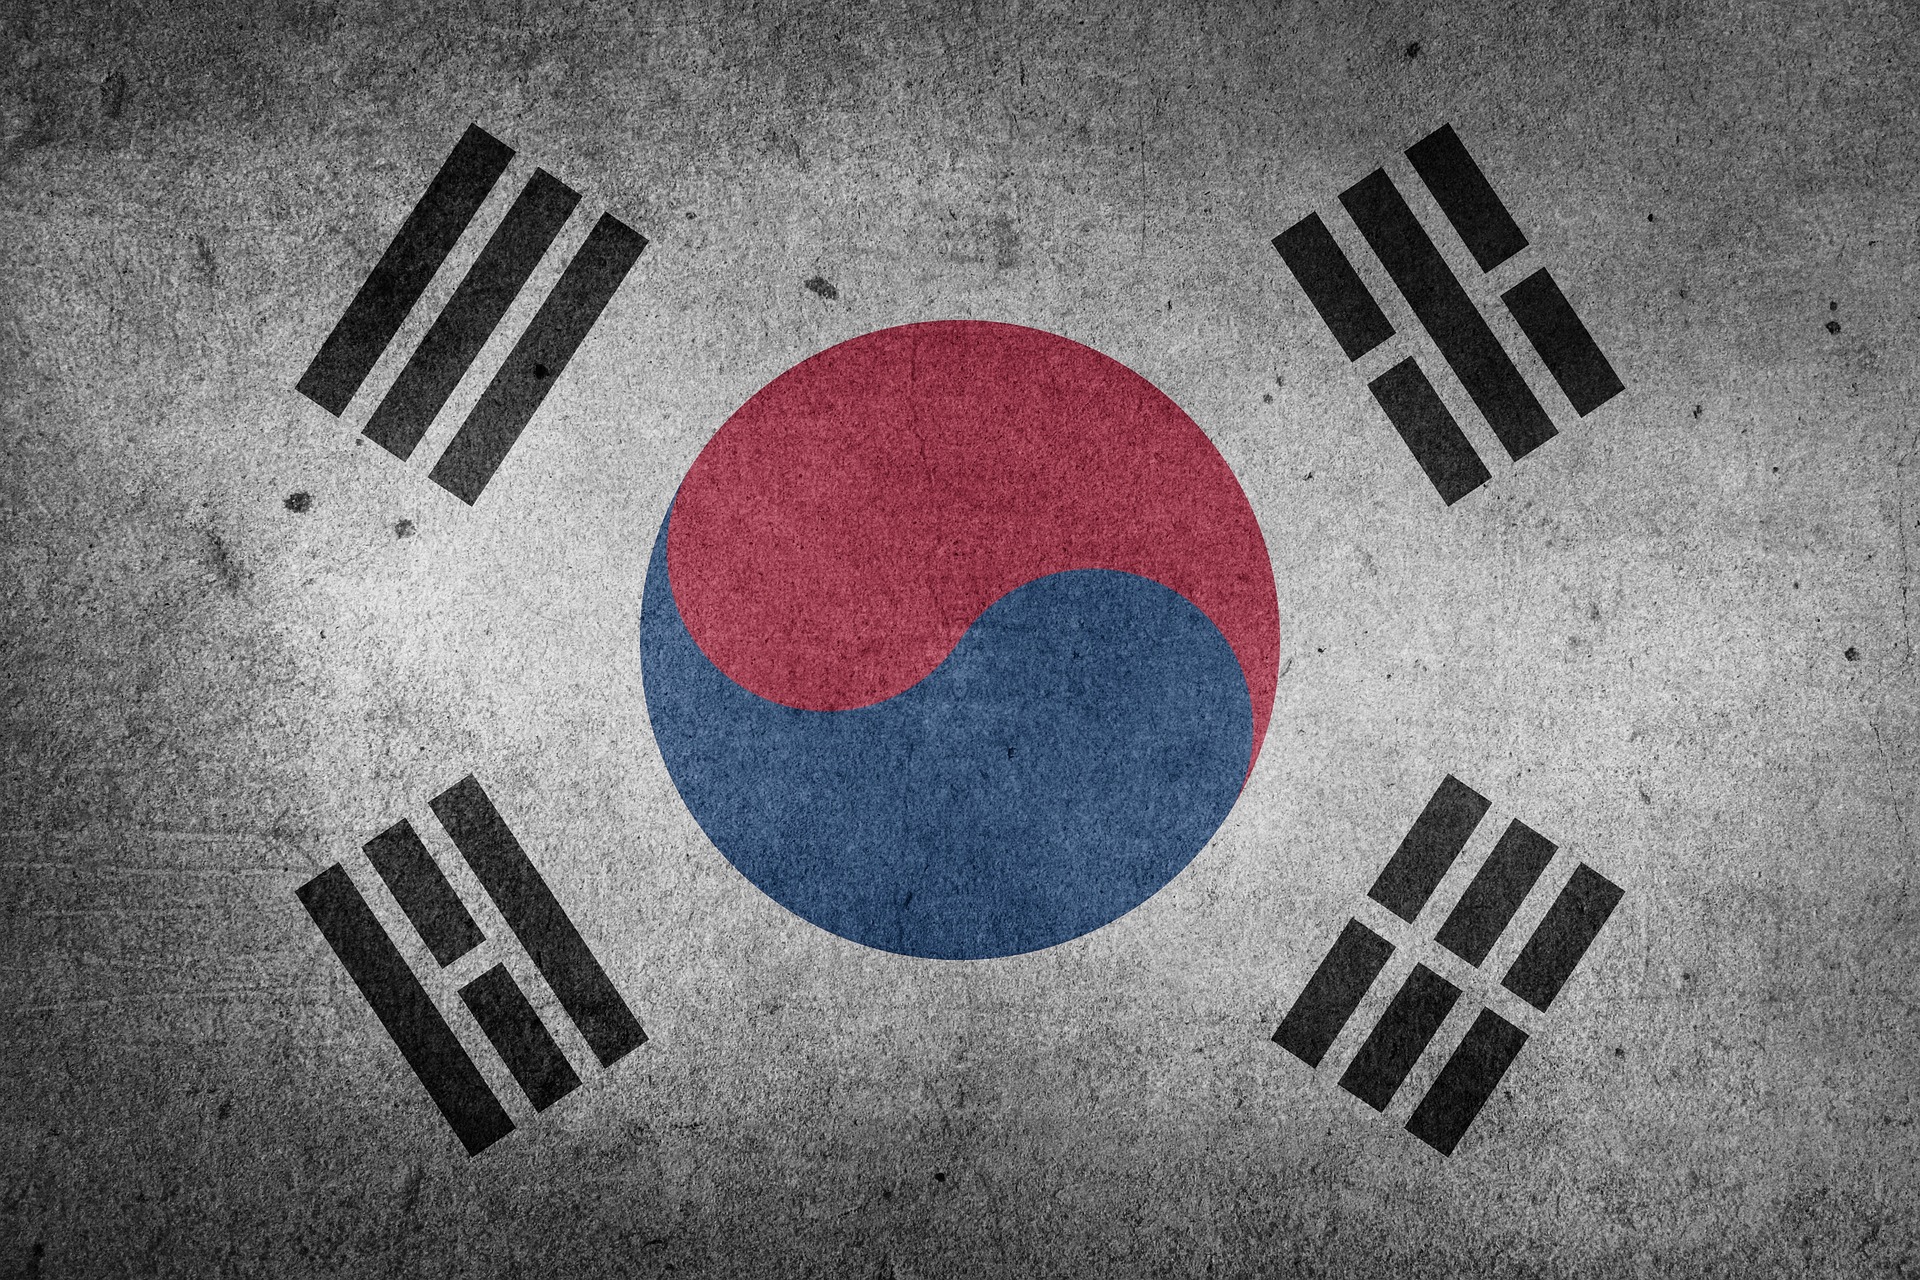 south-korea-1151149_1920